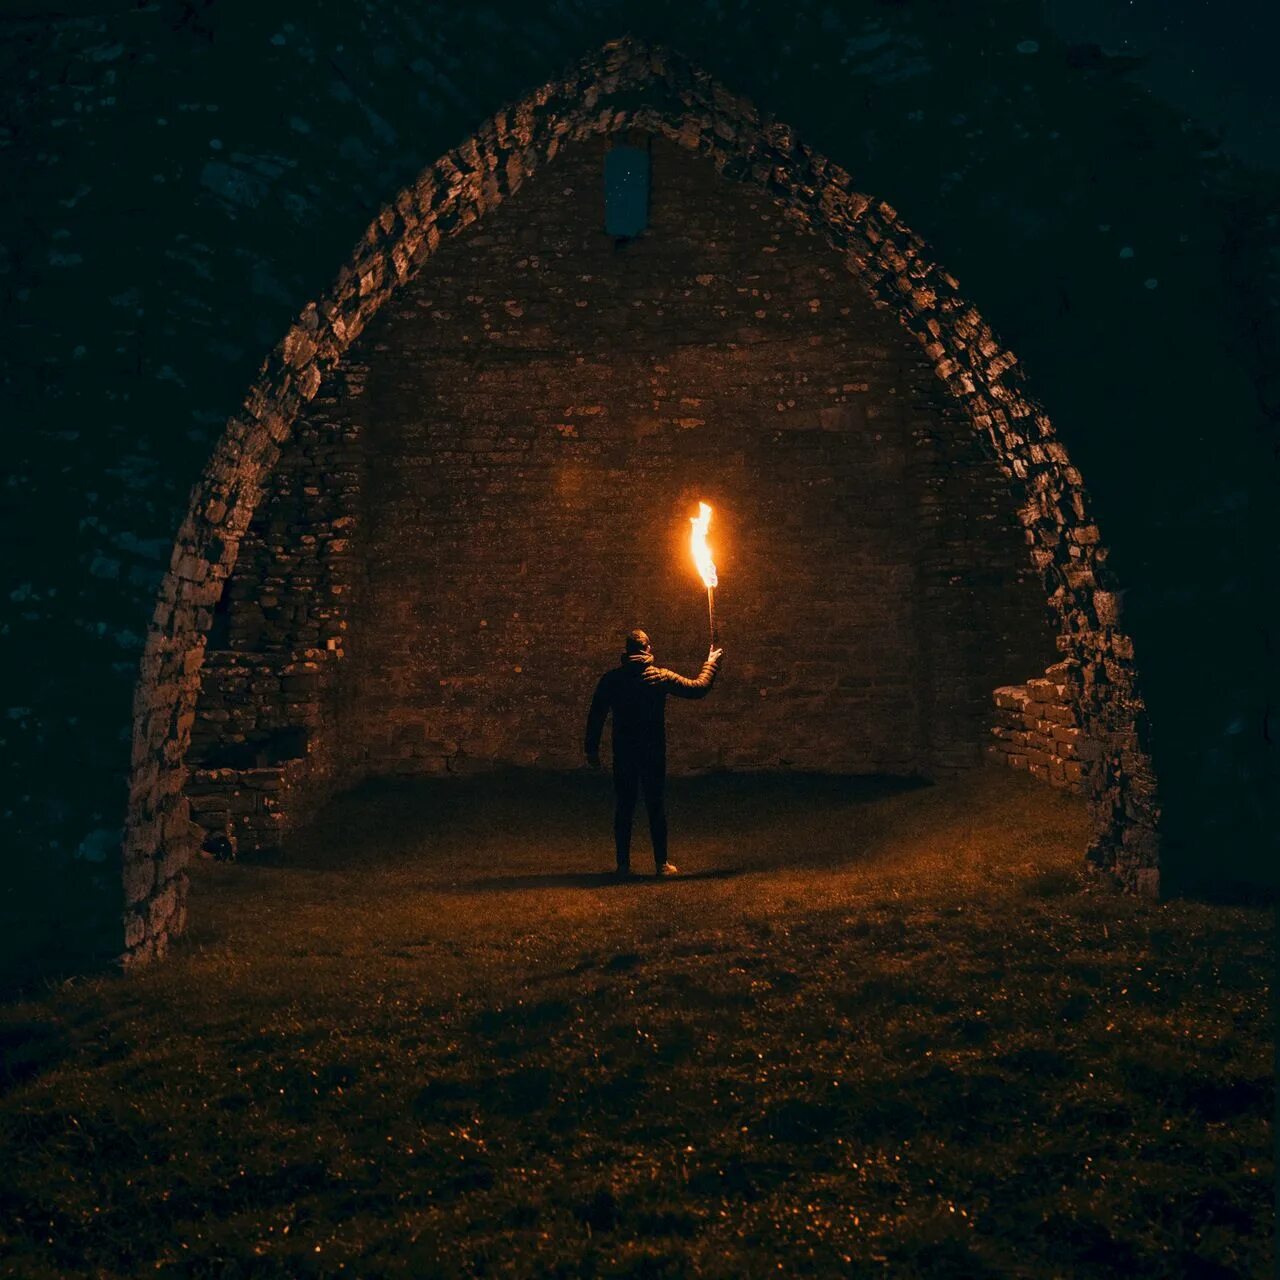 Оттуда в пляшущем свете факела поднимались пузырьки. Человек факел. Человек с факелом в руке. Человек с факелом в темноте. Человек с факелом в пещере.